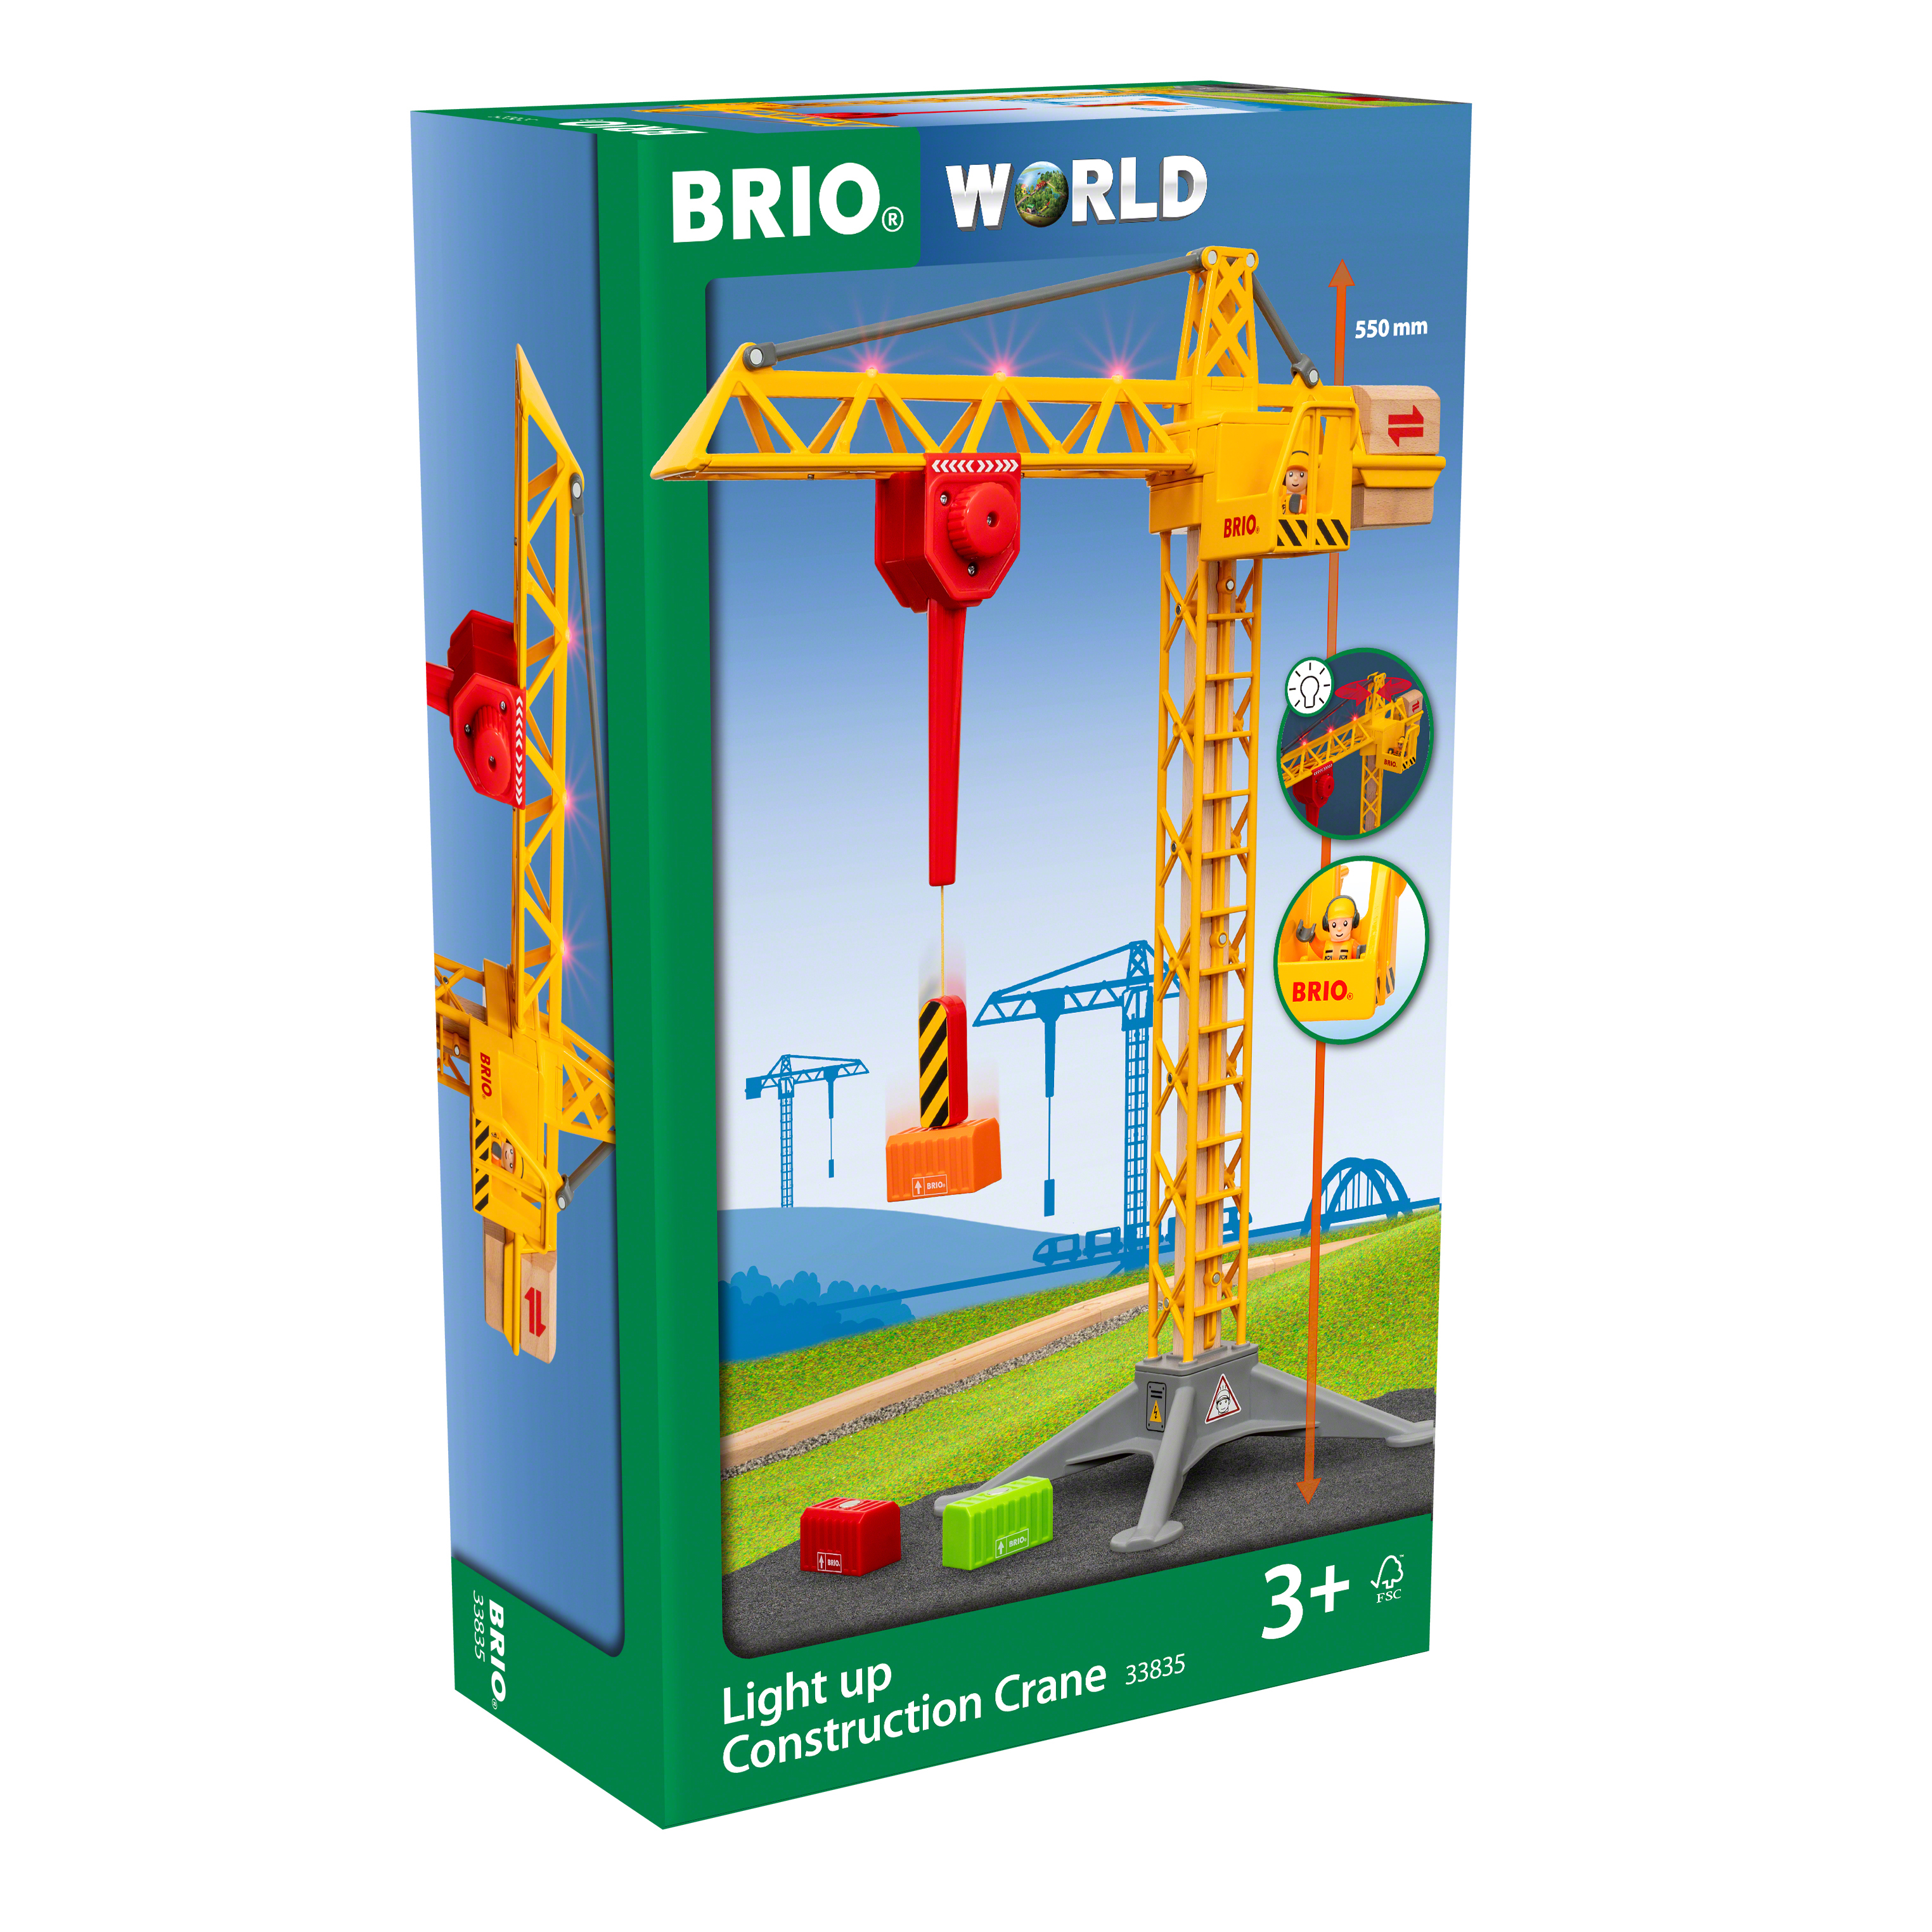 Light up Construction Crane, Brio